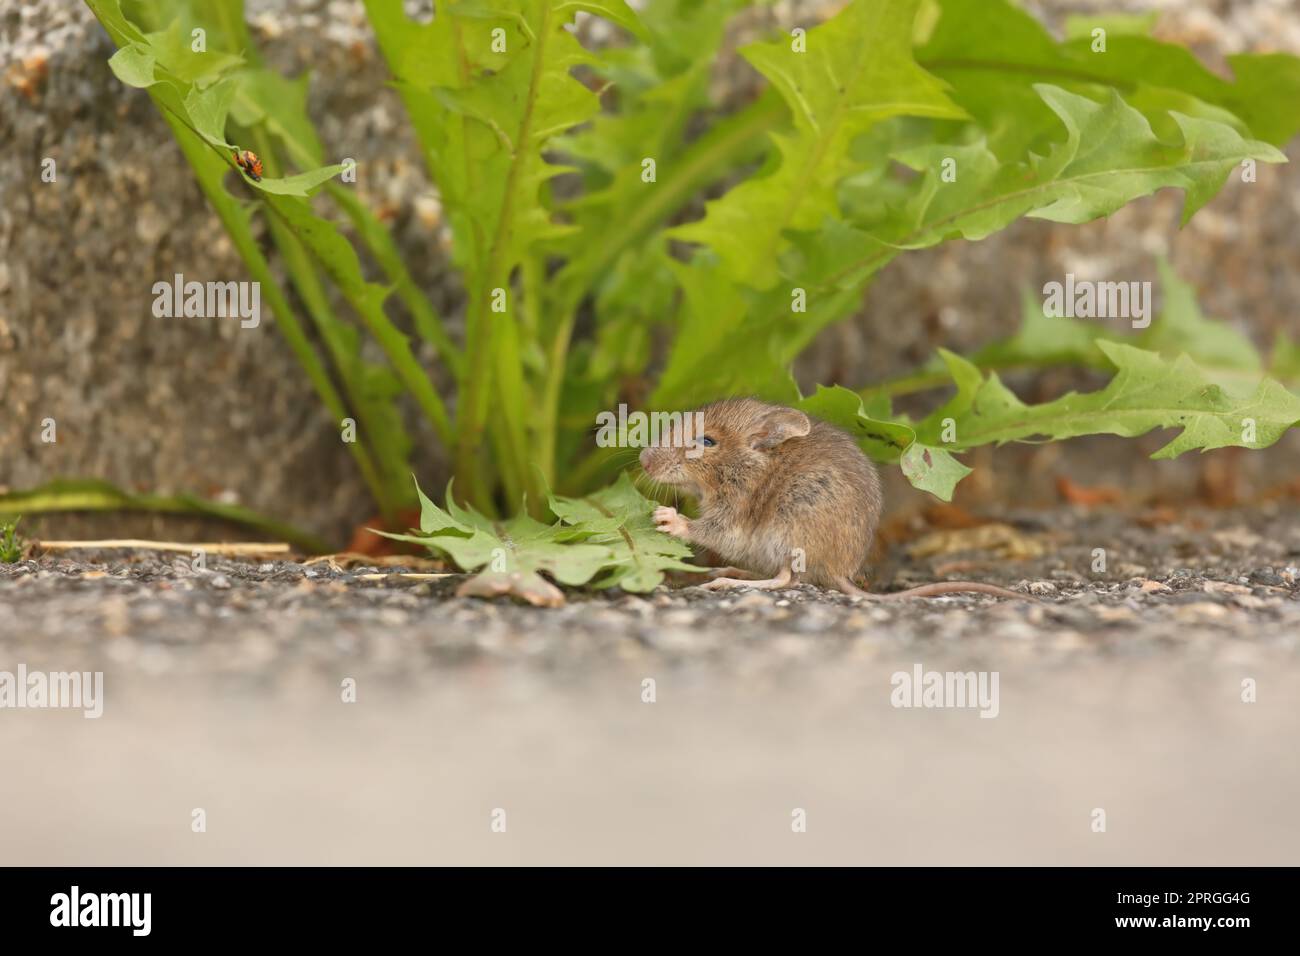 Mignonne souris maison gris-brun - mus musculus - assise à côté de feuilles vertes fraîches Banque D'Images